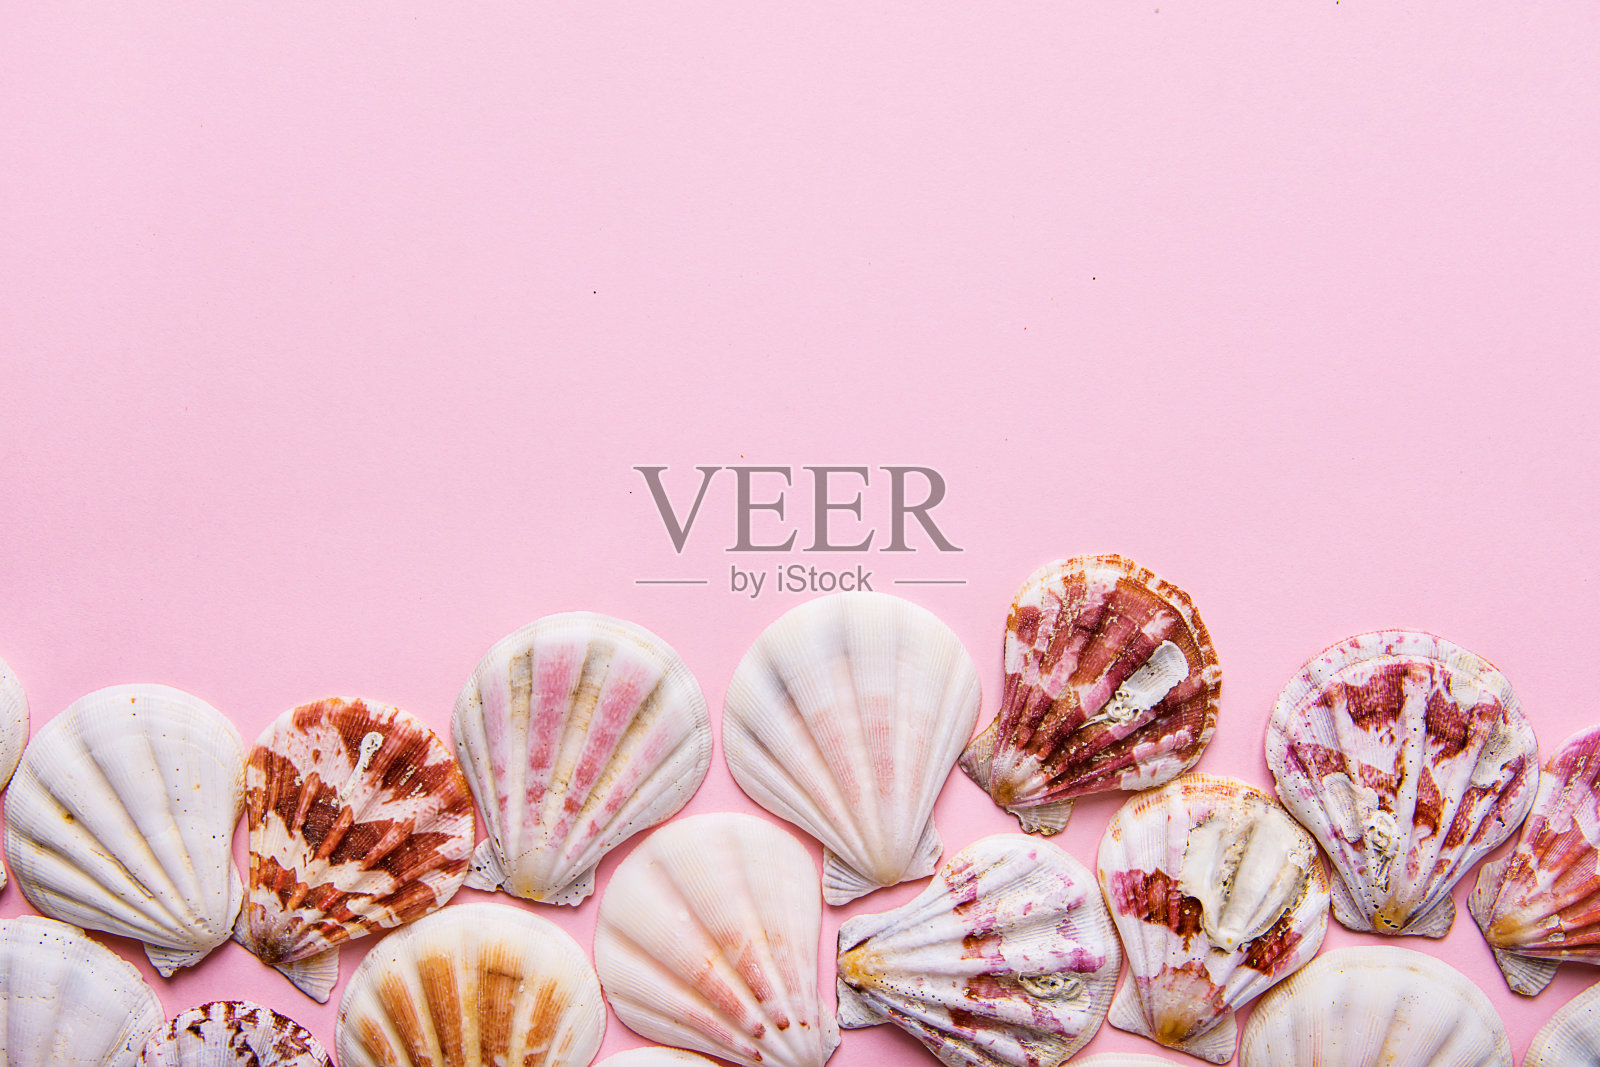 扁平的白色、粉红色、棕色的海贝壳排列在粉红色粉彩背景的边框上。副本的空间。卡片海报模板。热带假期聚会照片摄影图片